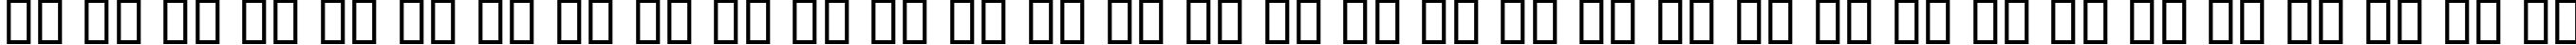 Пример написания русского алфавита шрифтом KacstOne